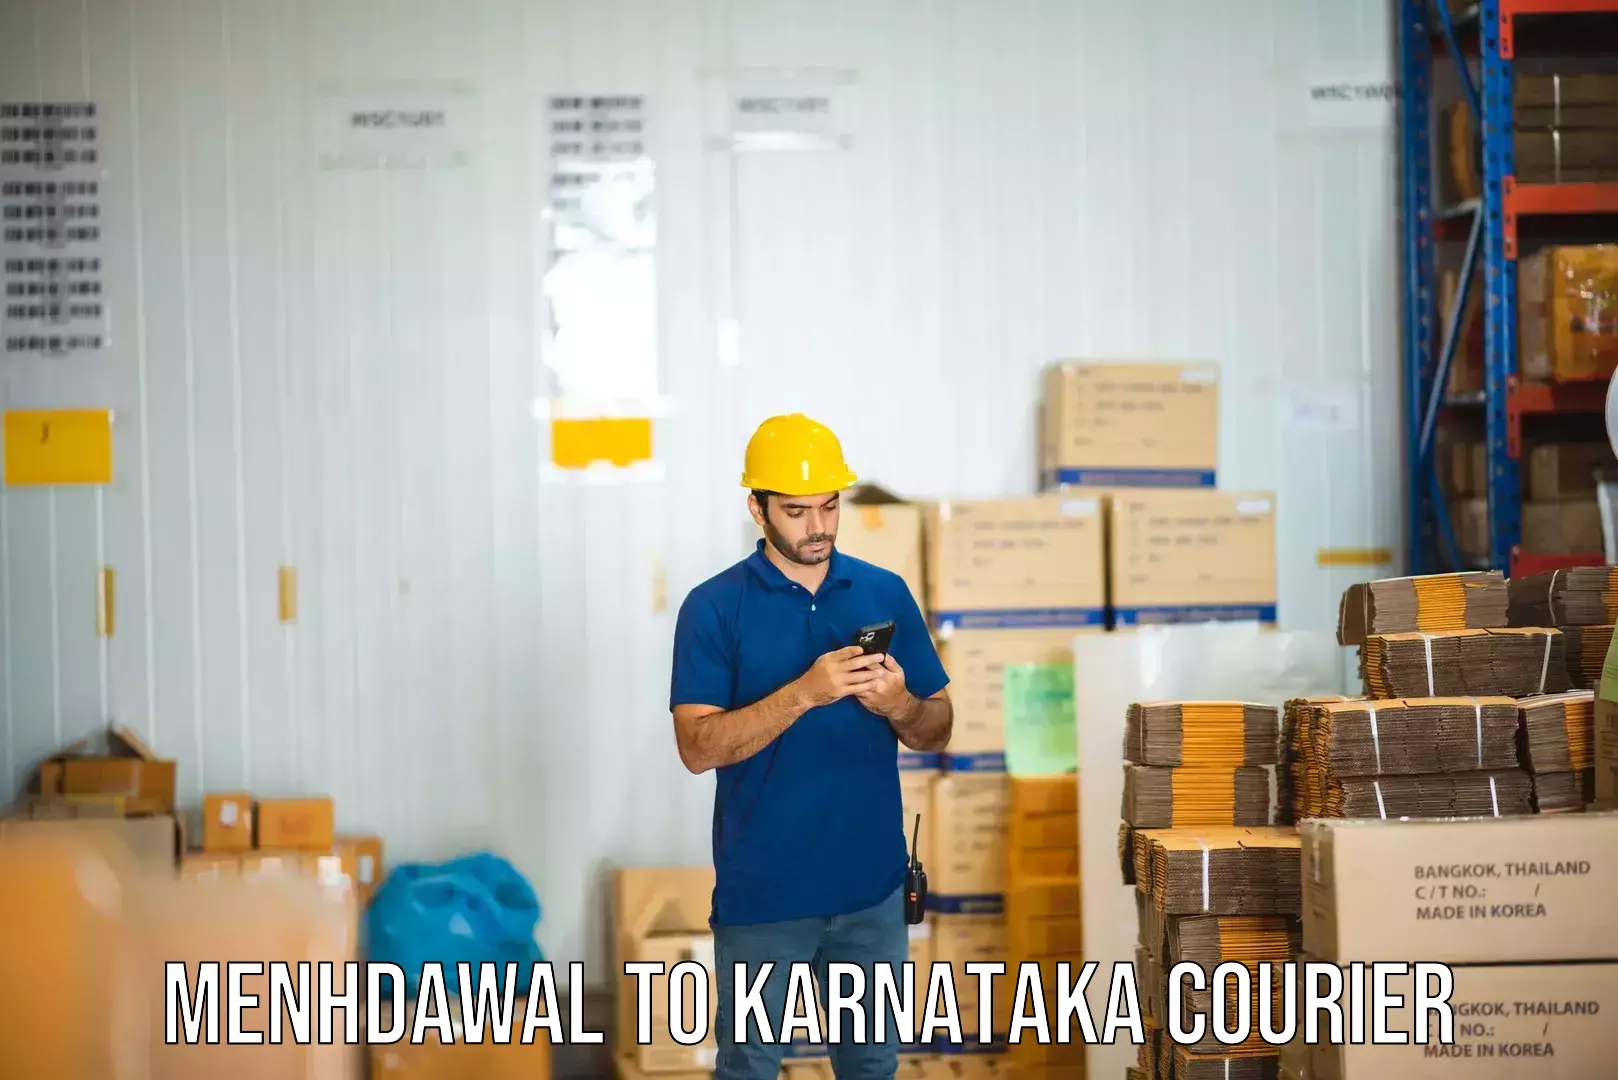 Automated shipping in Menhdawal to Karnataka